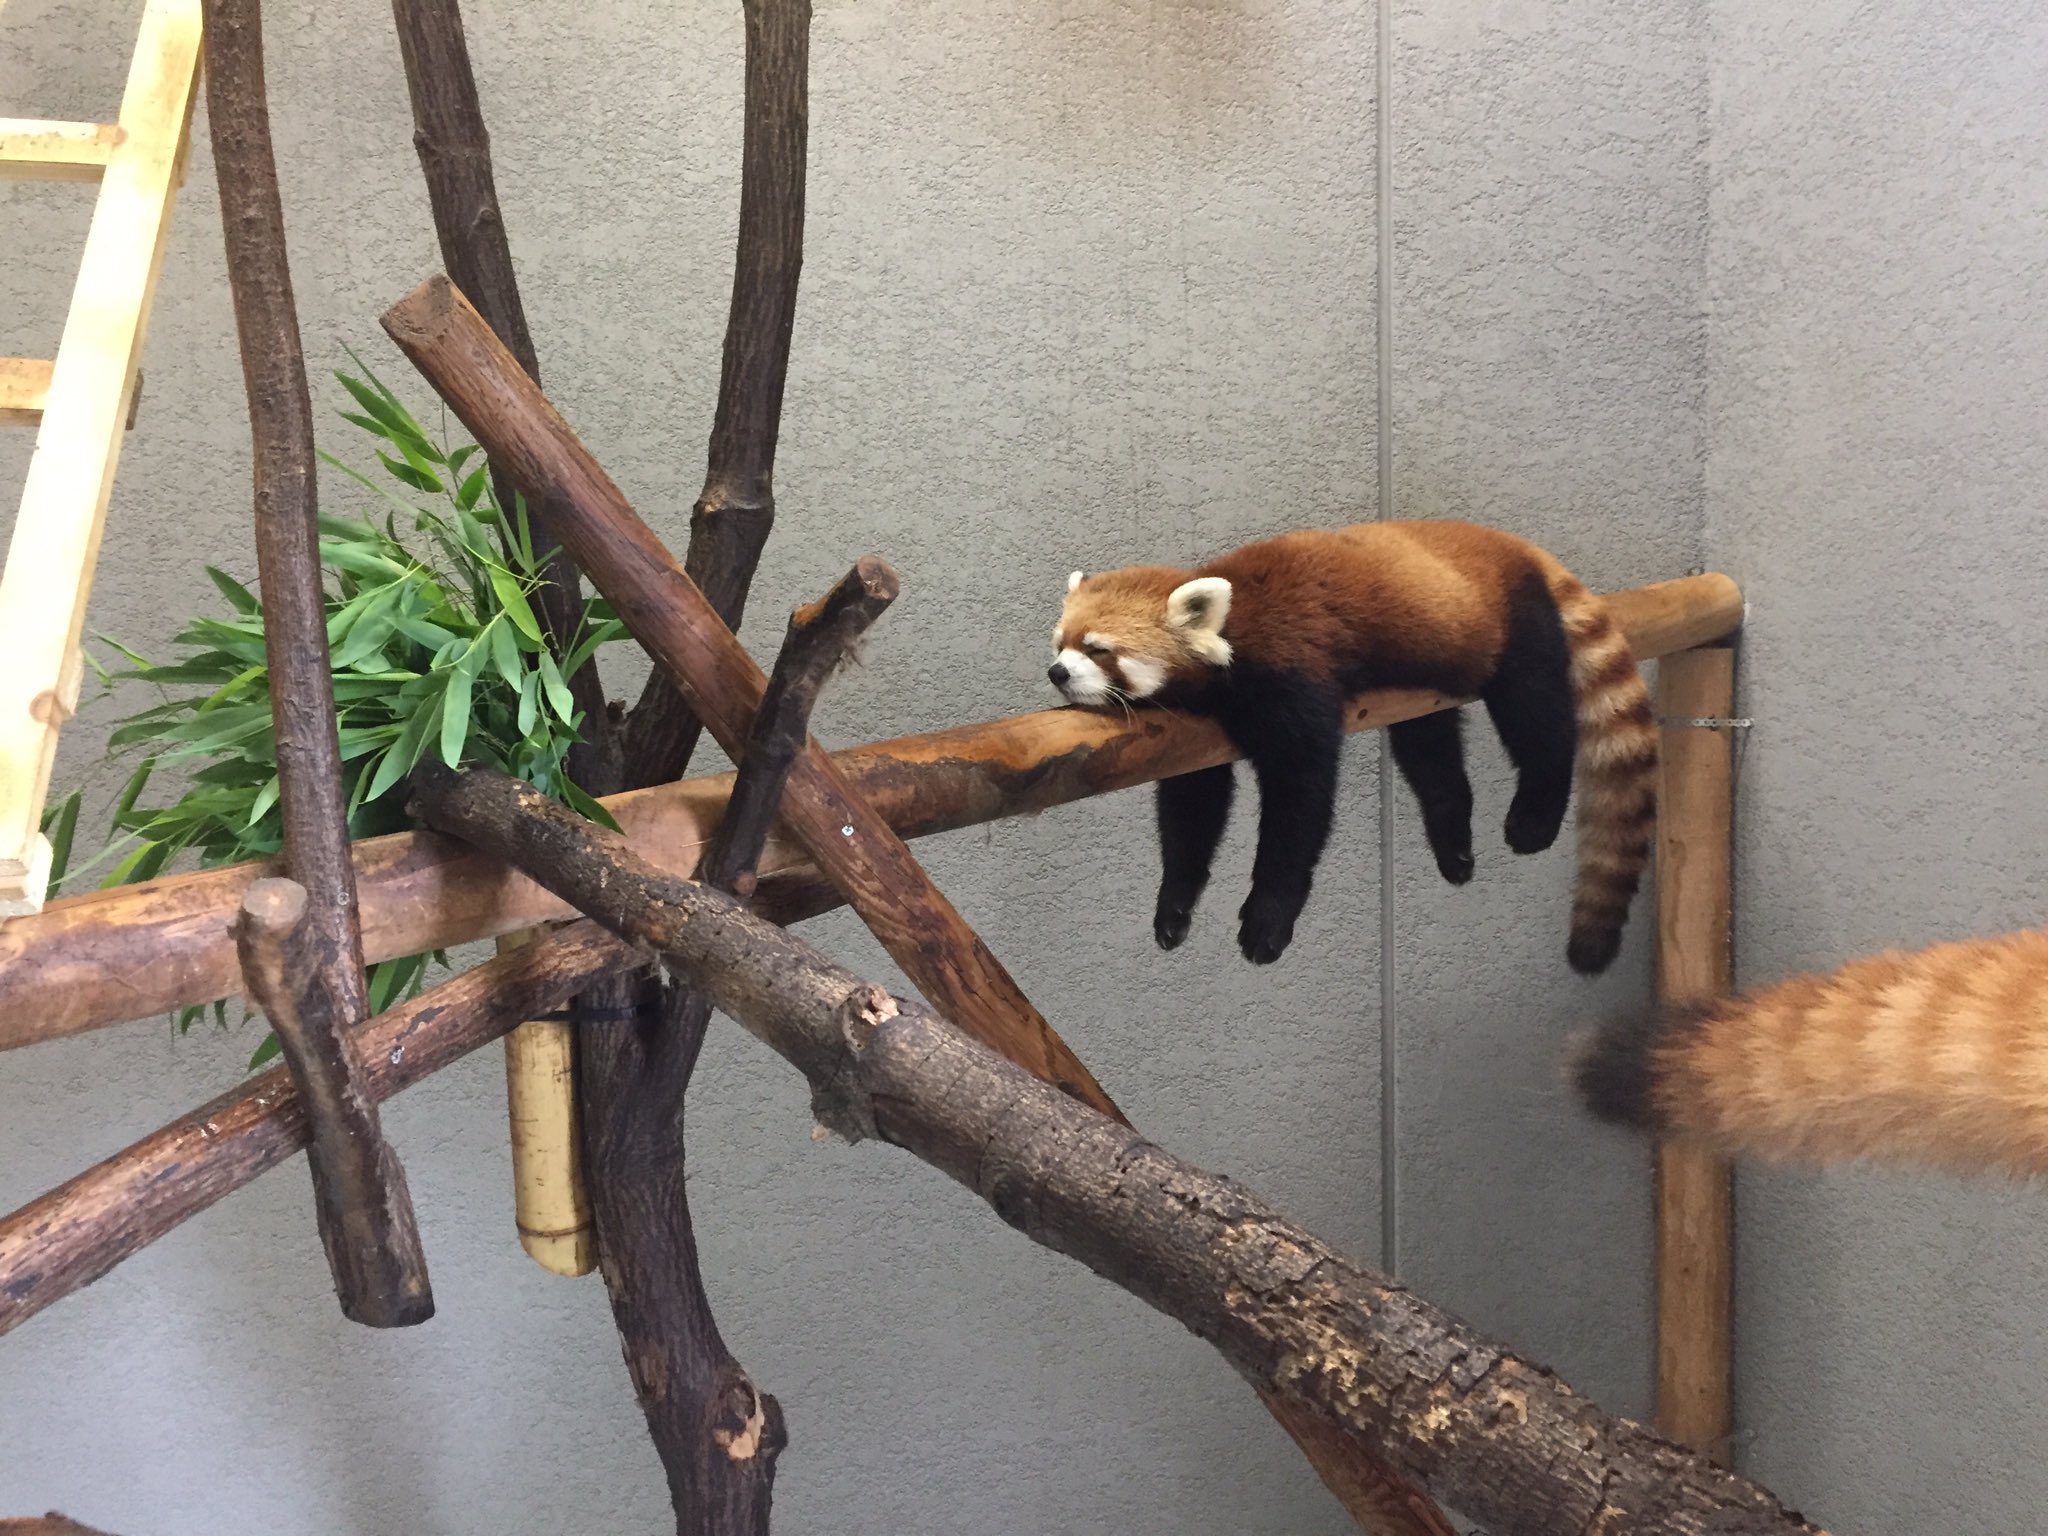 ぐでー 札幌市円山動物園レッサーパンダがすごい体勢で爆睡してます 笑